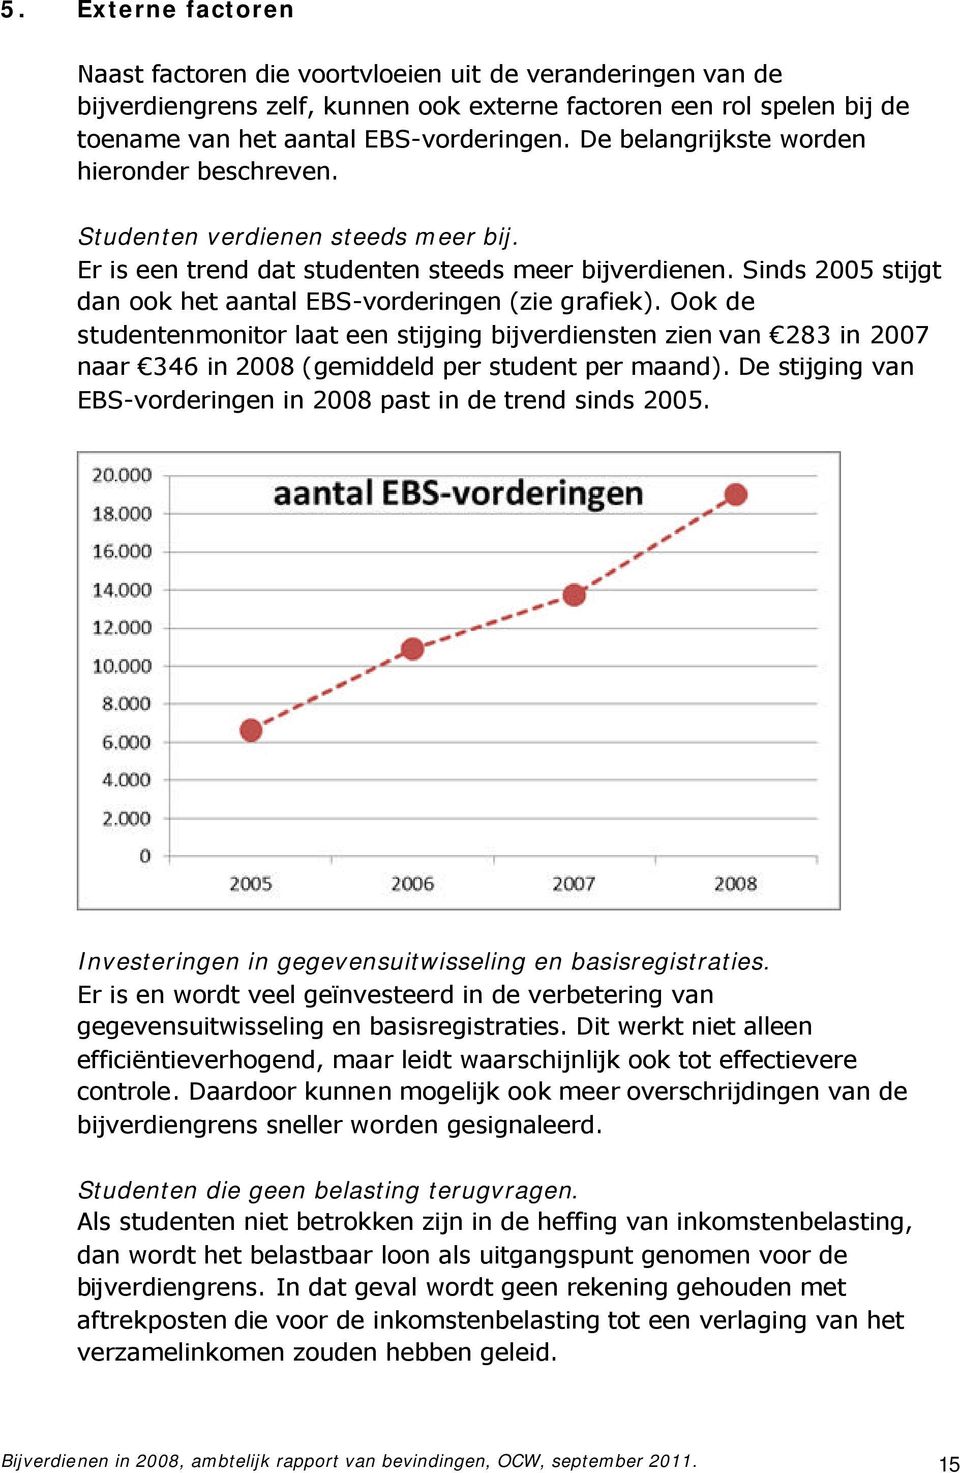 Sinds 2005 stijgt dan ook het aantal EBS-vorderingen (zie grafiek). Ook de studentenmonitor laat een stijging bijverdiensten zien van 283 in 2007 naar 346 in 2008 (gemiddeld per student per maand).